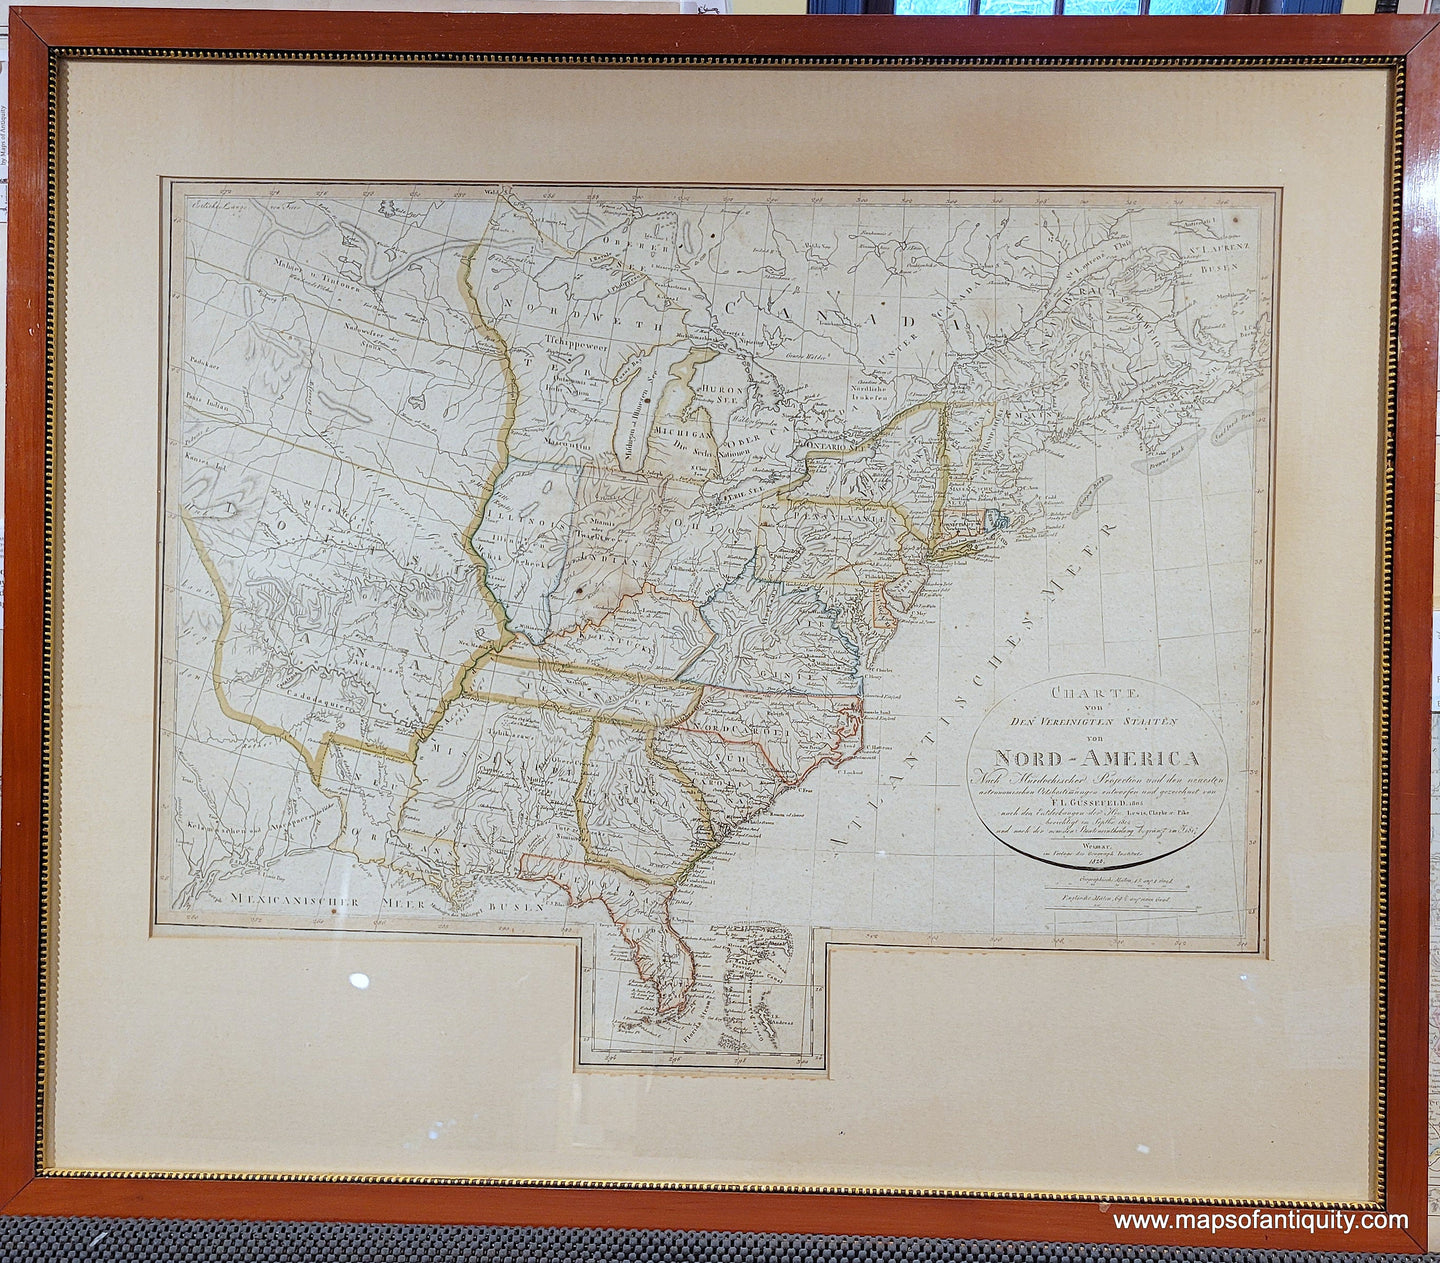 Genuine-Antique-Map-United-States---Charte-von-den-Vereinigten-Staaten-von-Nord-America-nebst-Louisiana-und-Florida-1820-Franz-Ludwig-Gussefeld--Maps-Of-Antiquity